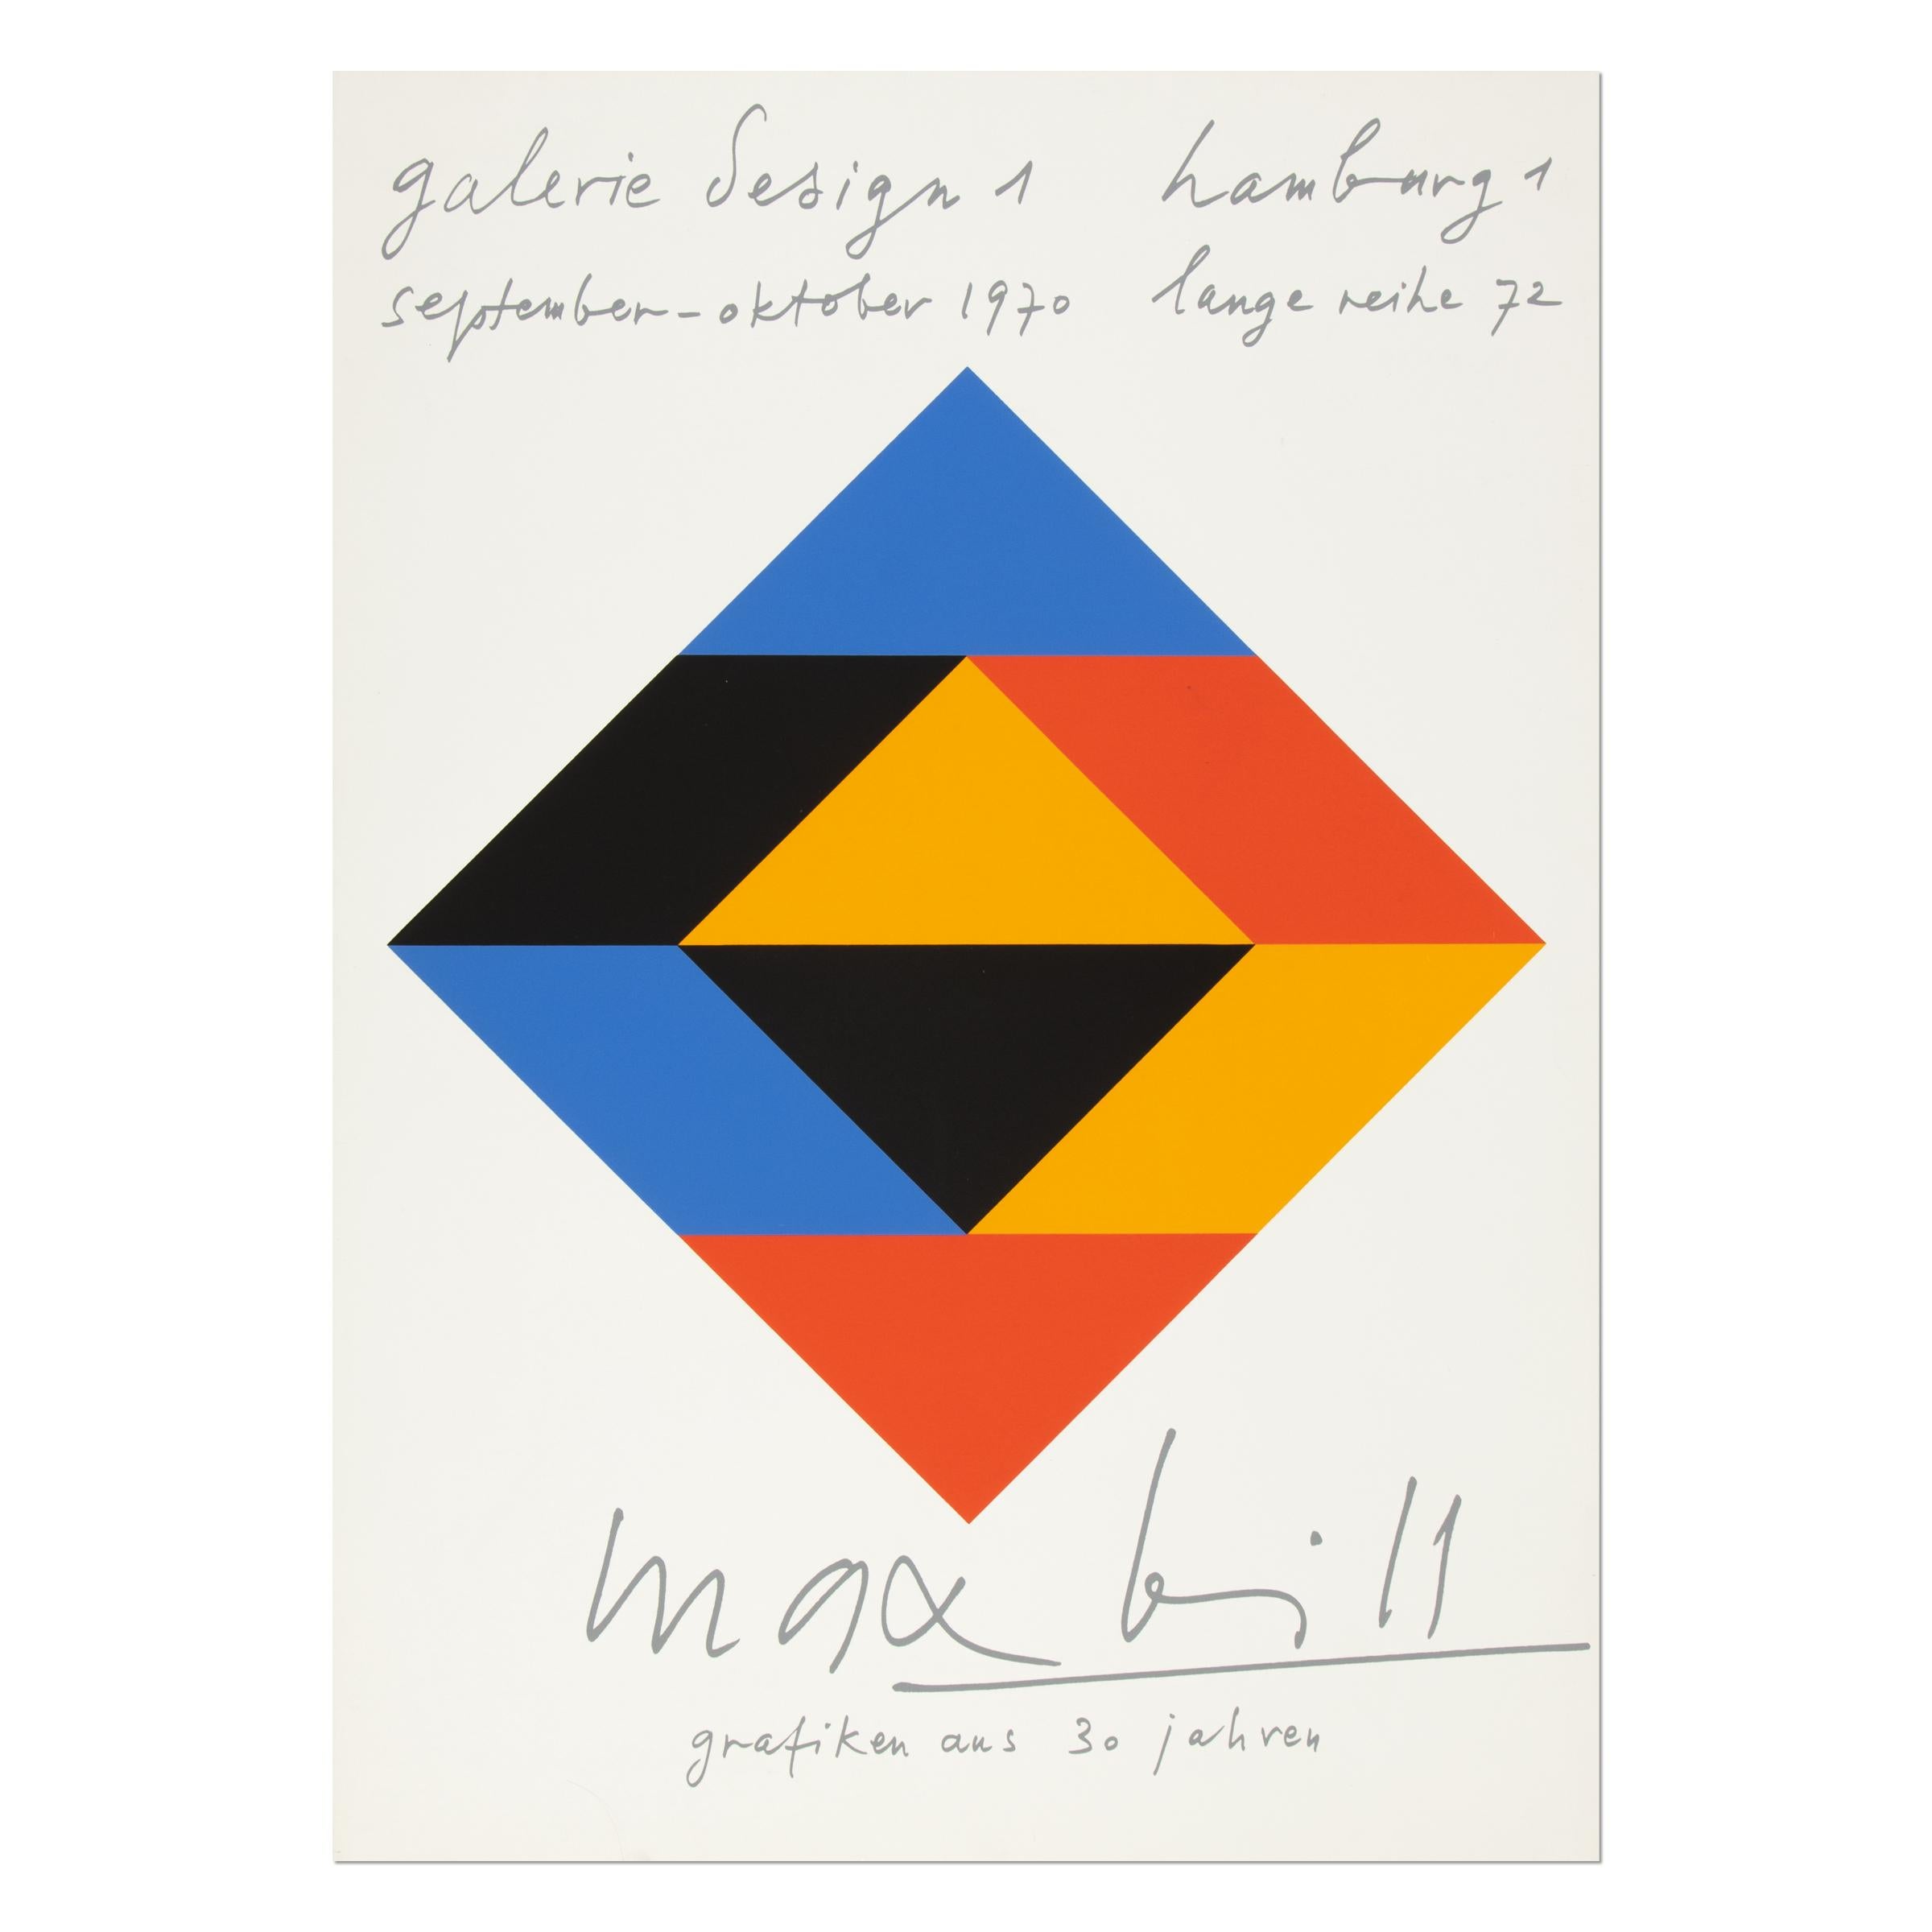 Originalplakat für die Ausstellung "Grafiken aus 30 Jahren" von Max Billing in der Galerie Design 1 in Hamburg im Jahr 1970.